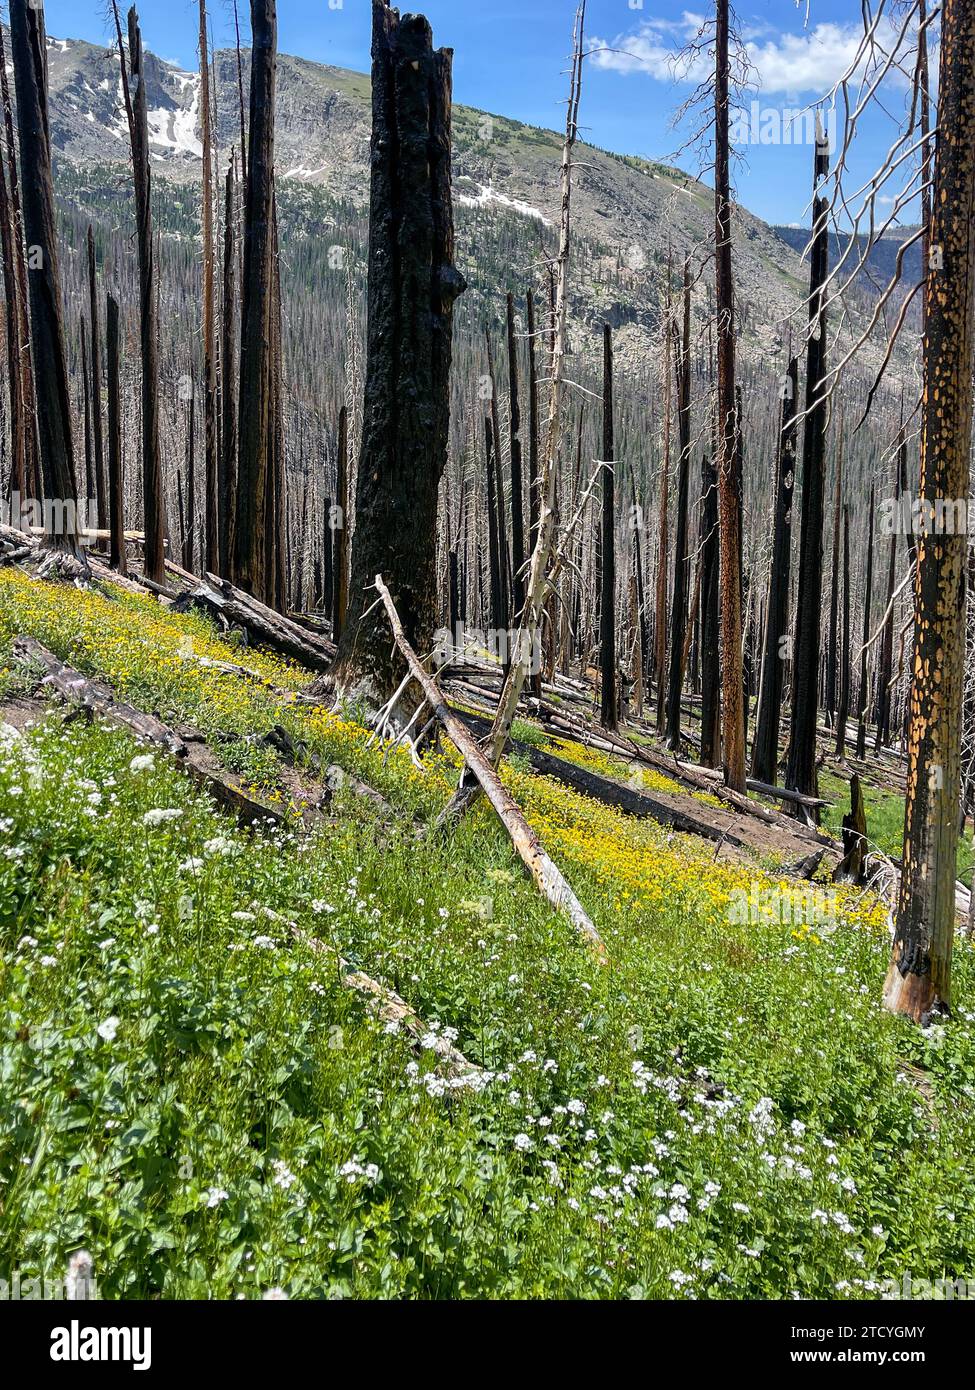 La repousse fleurit parmi les arbres carbonisés, signalant la résilience dans le parc national des montagnes Rocheuses. Banque D'Images